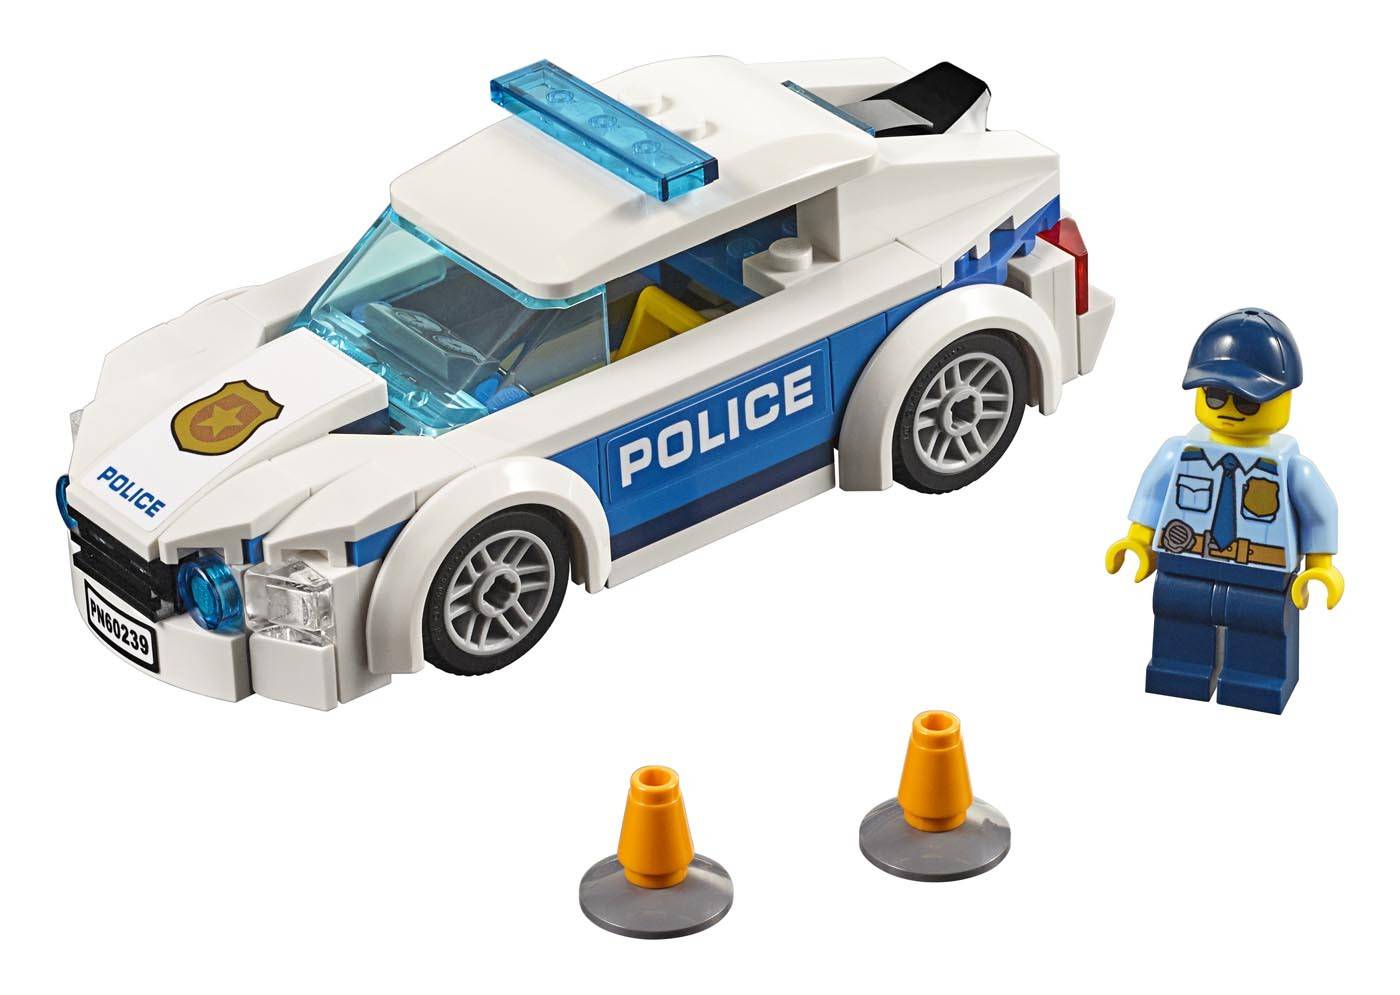 LEGO City Samochód policyjny 60239